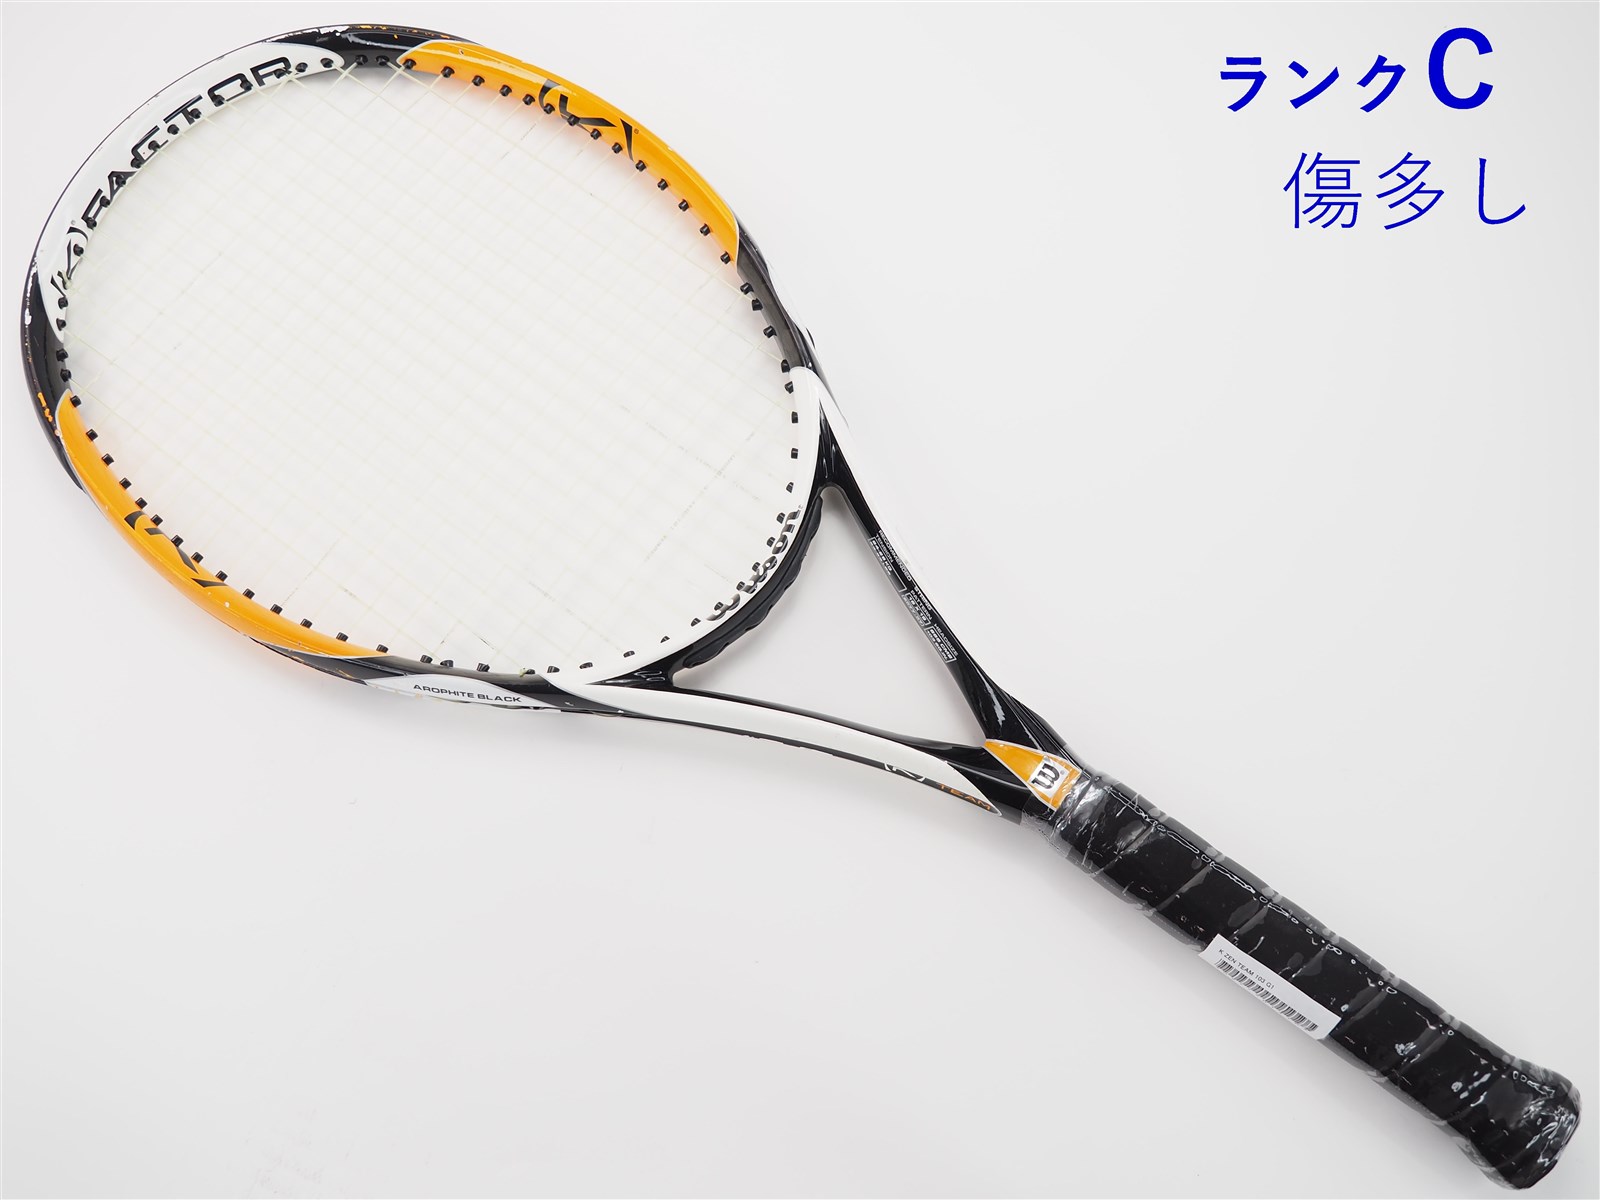 【中古】ウィルソン K ゼン チーム 103WILSON K ZEN TEAM 103(G1)【中古 テニスラケット】【送料無料】